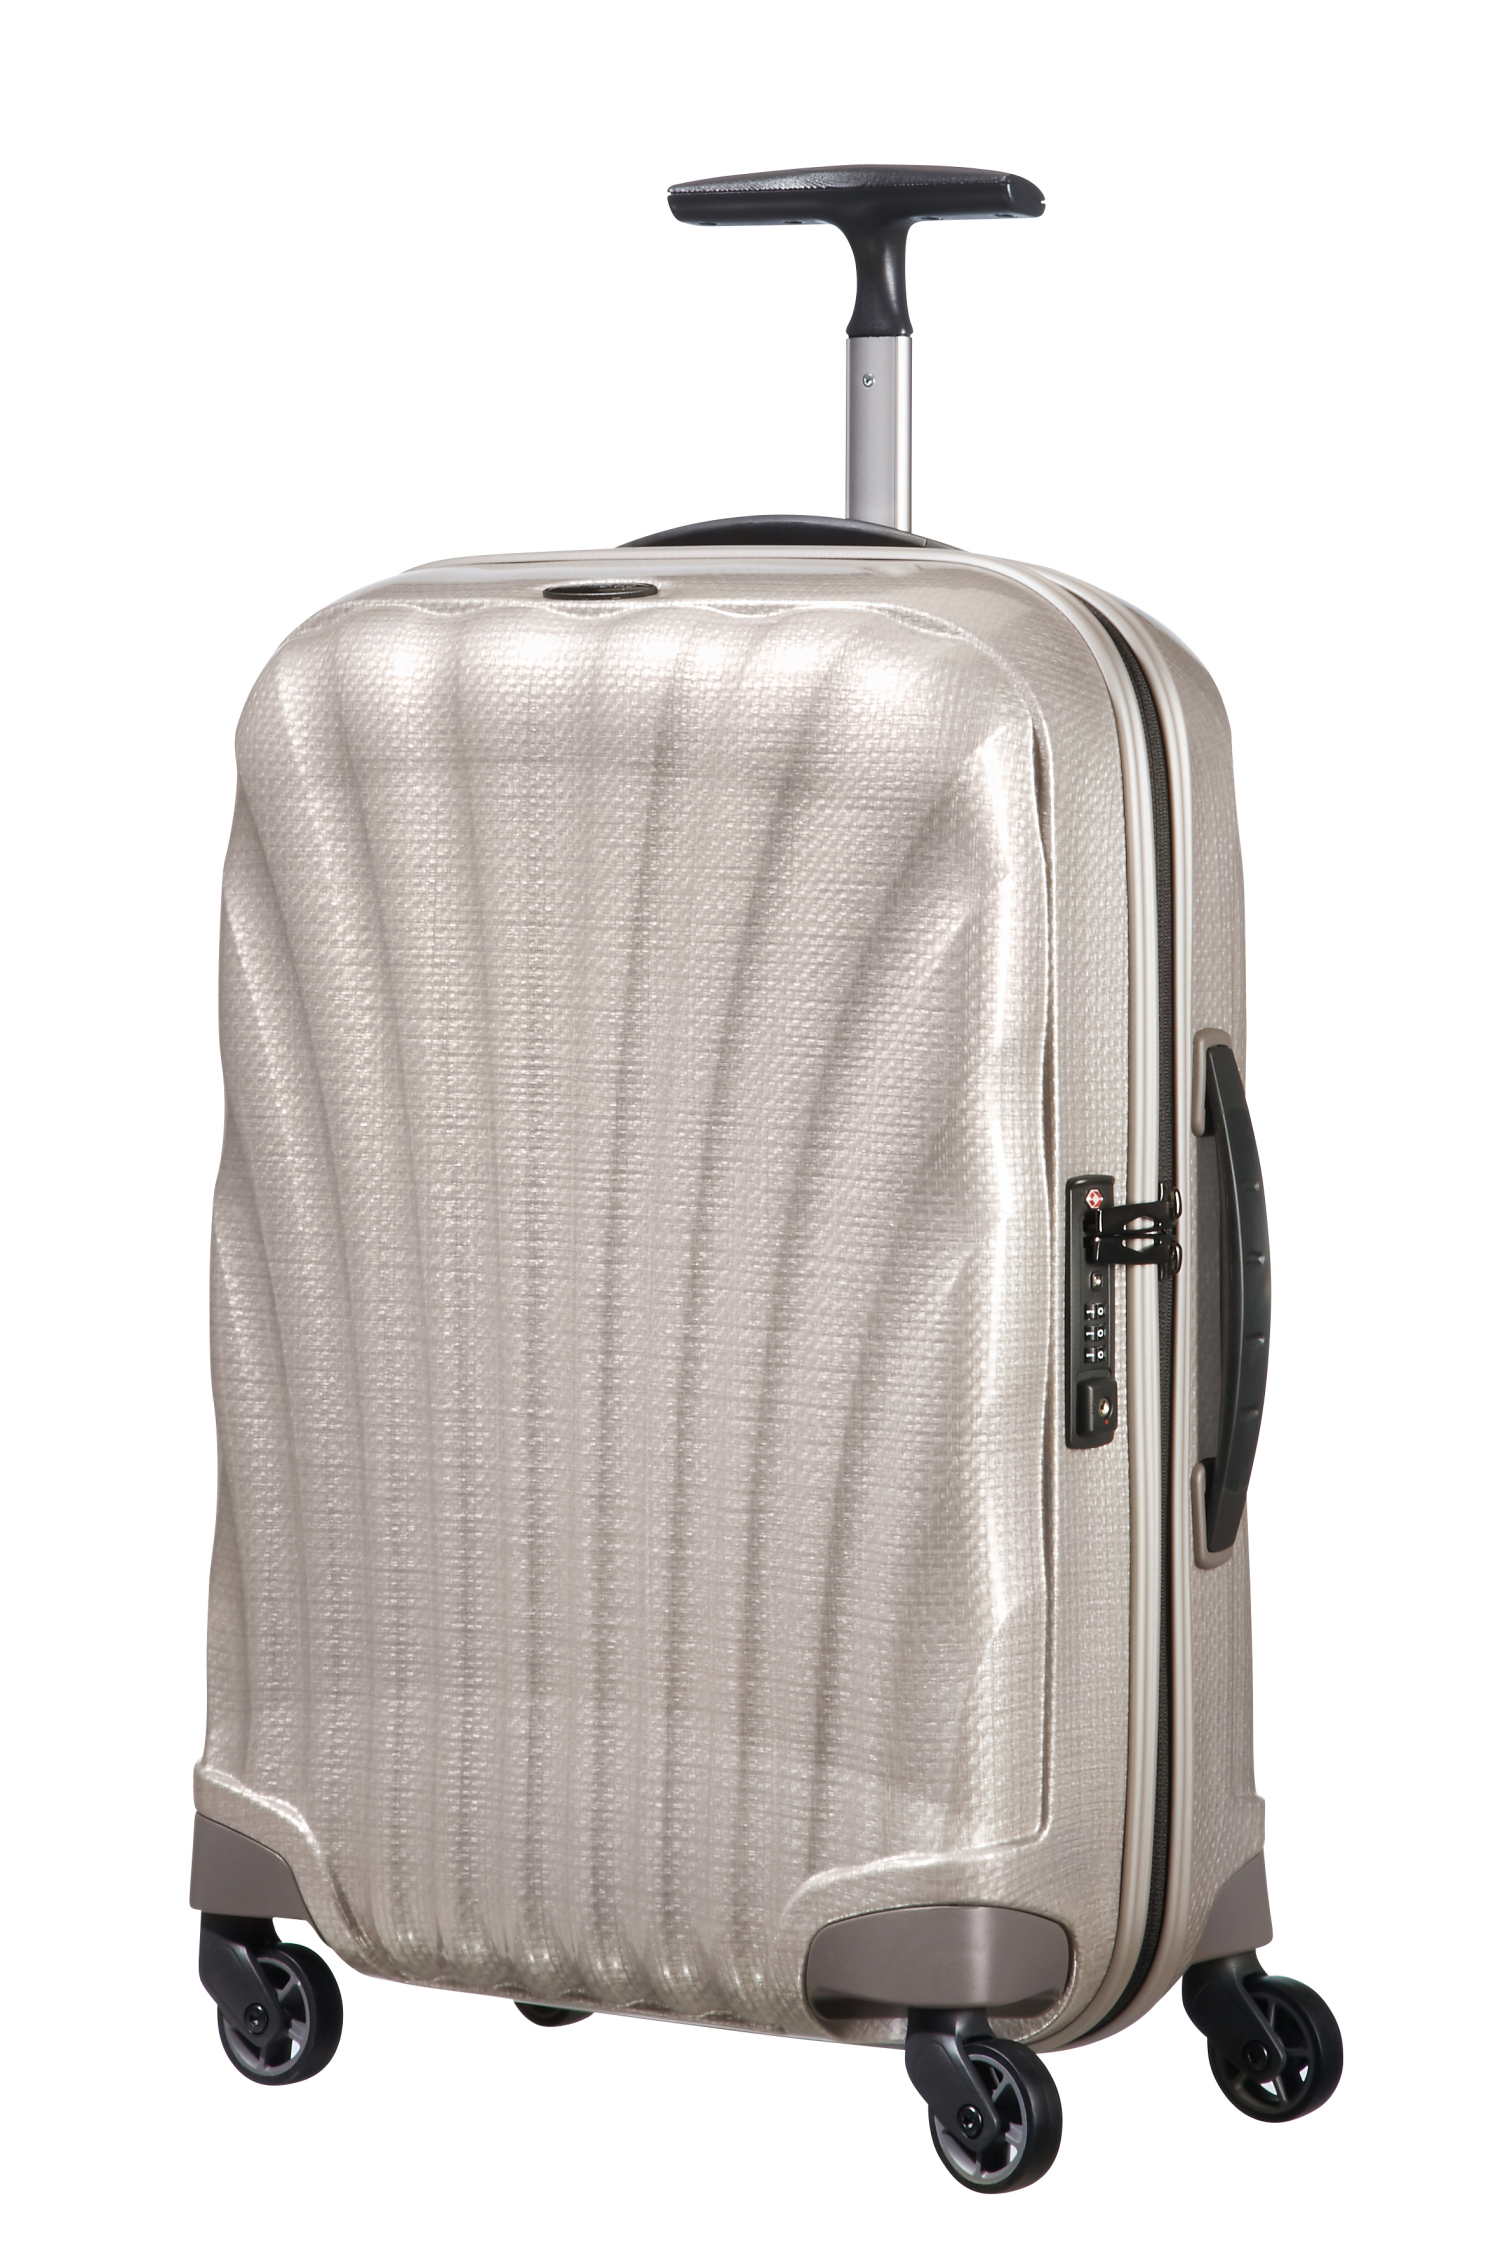 Samsonite Cabin Suitcase Cosmolite Pearl